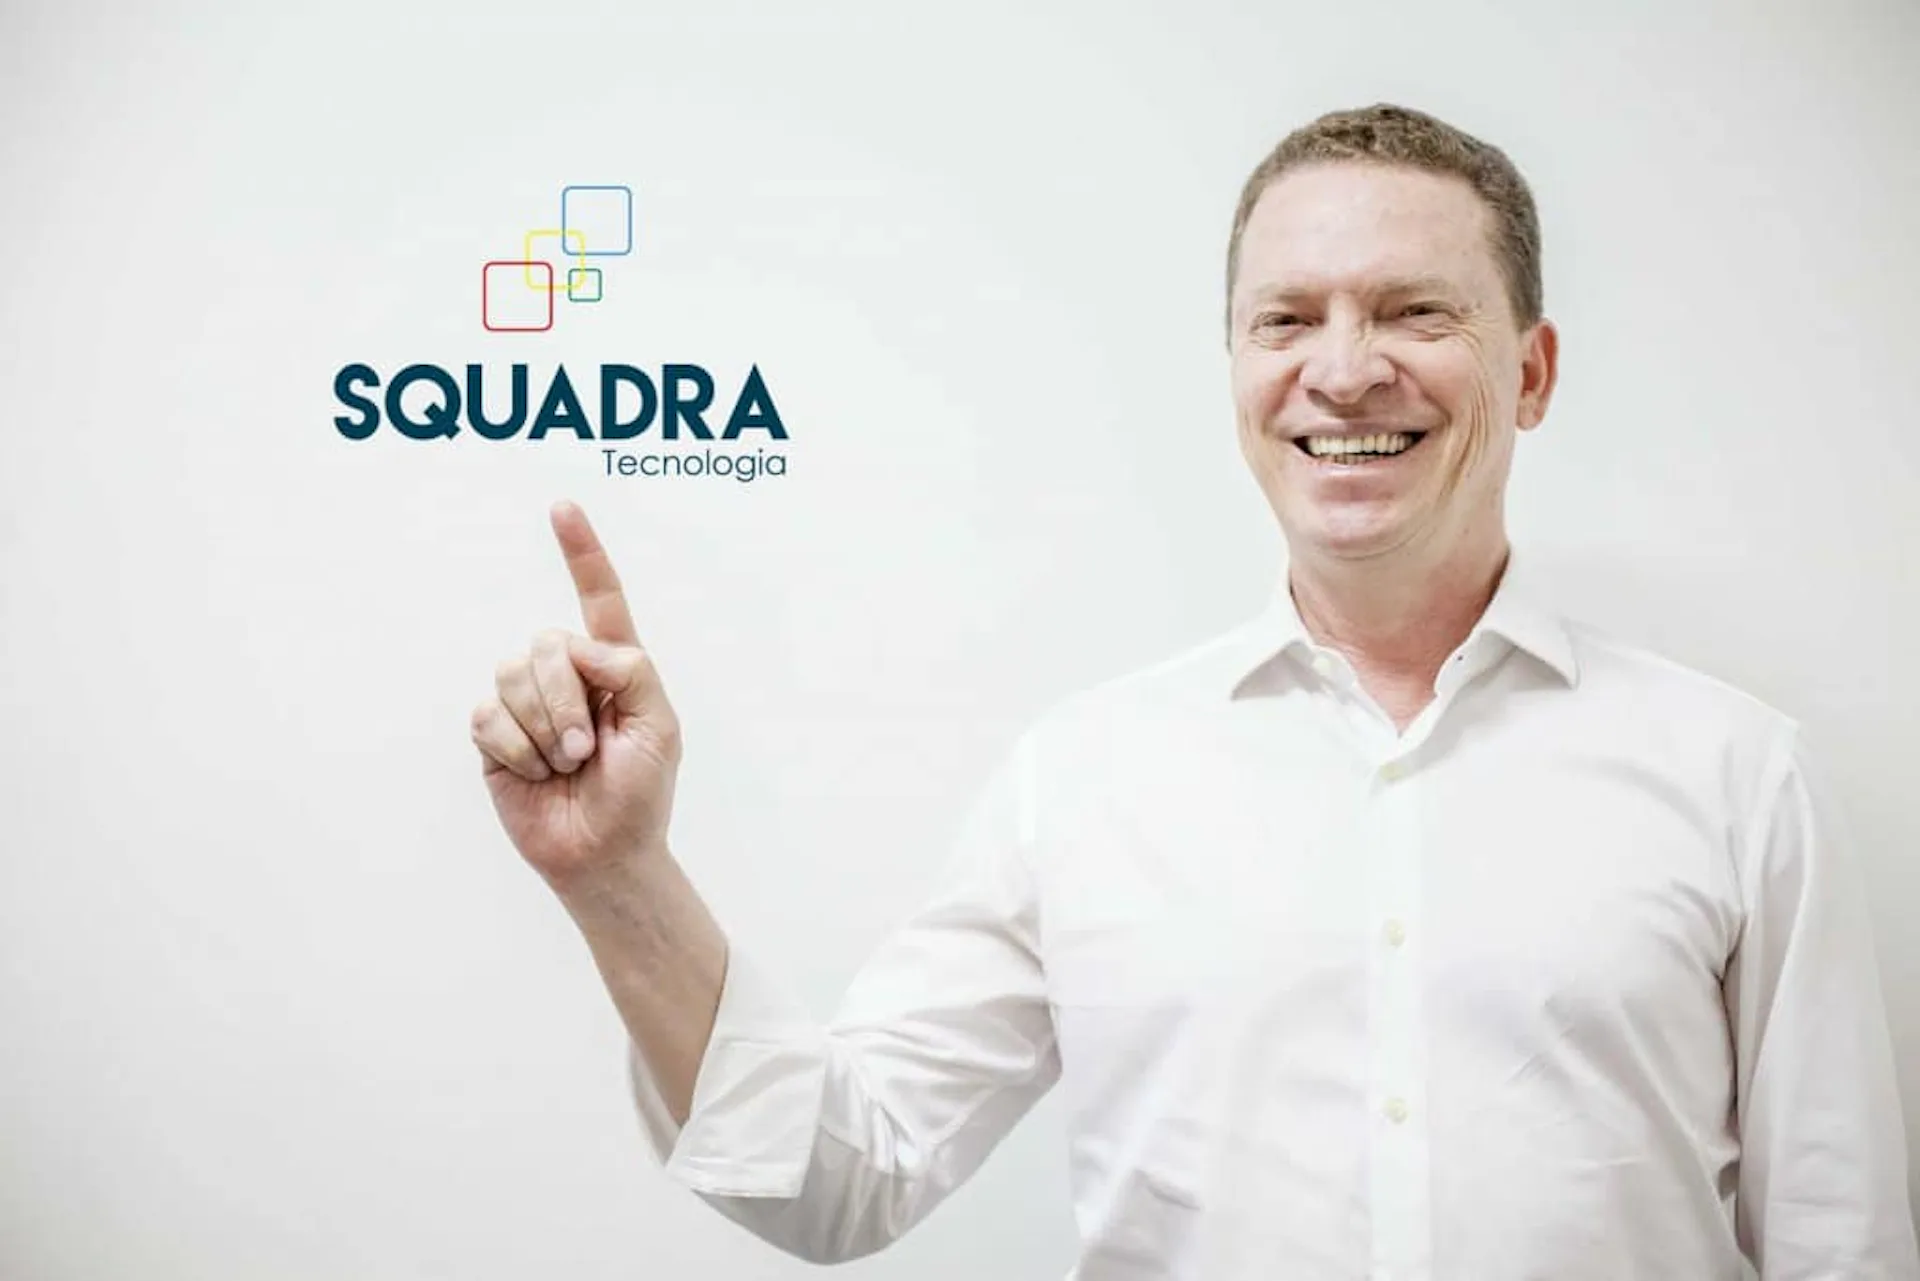 Imagem do Alex Vieira apontando para o logo da SQUADRA.